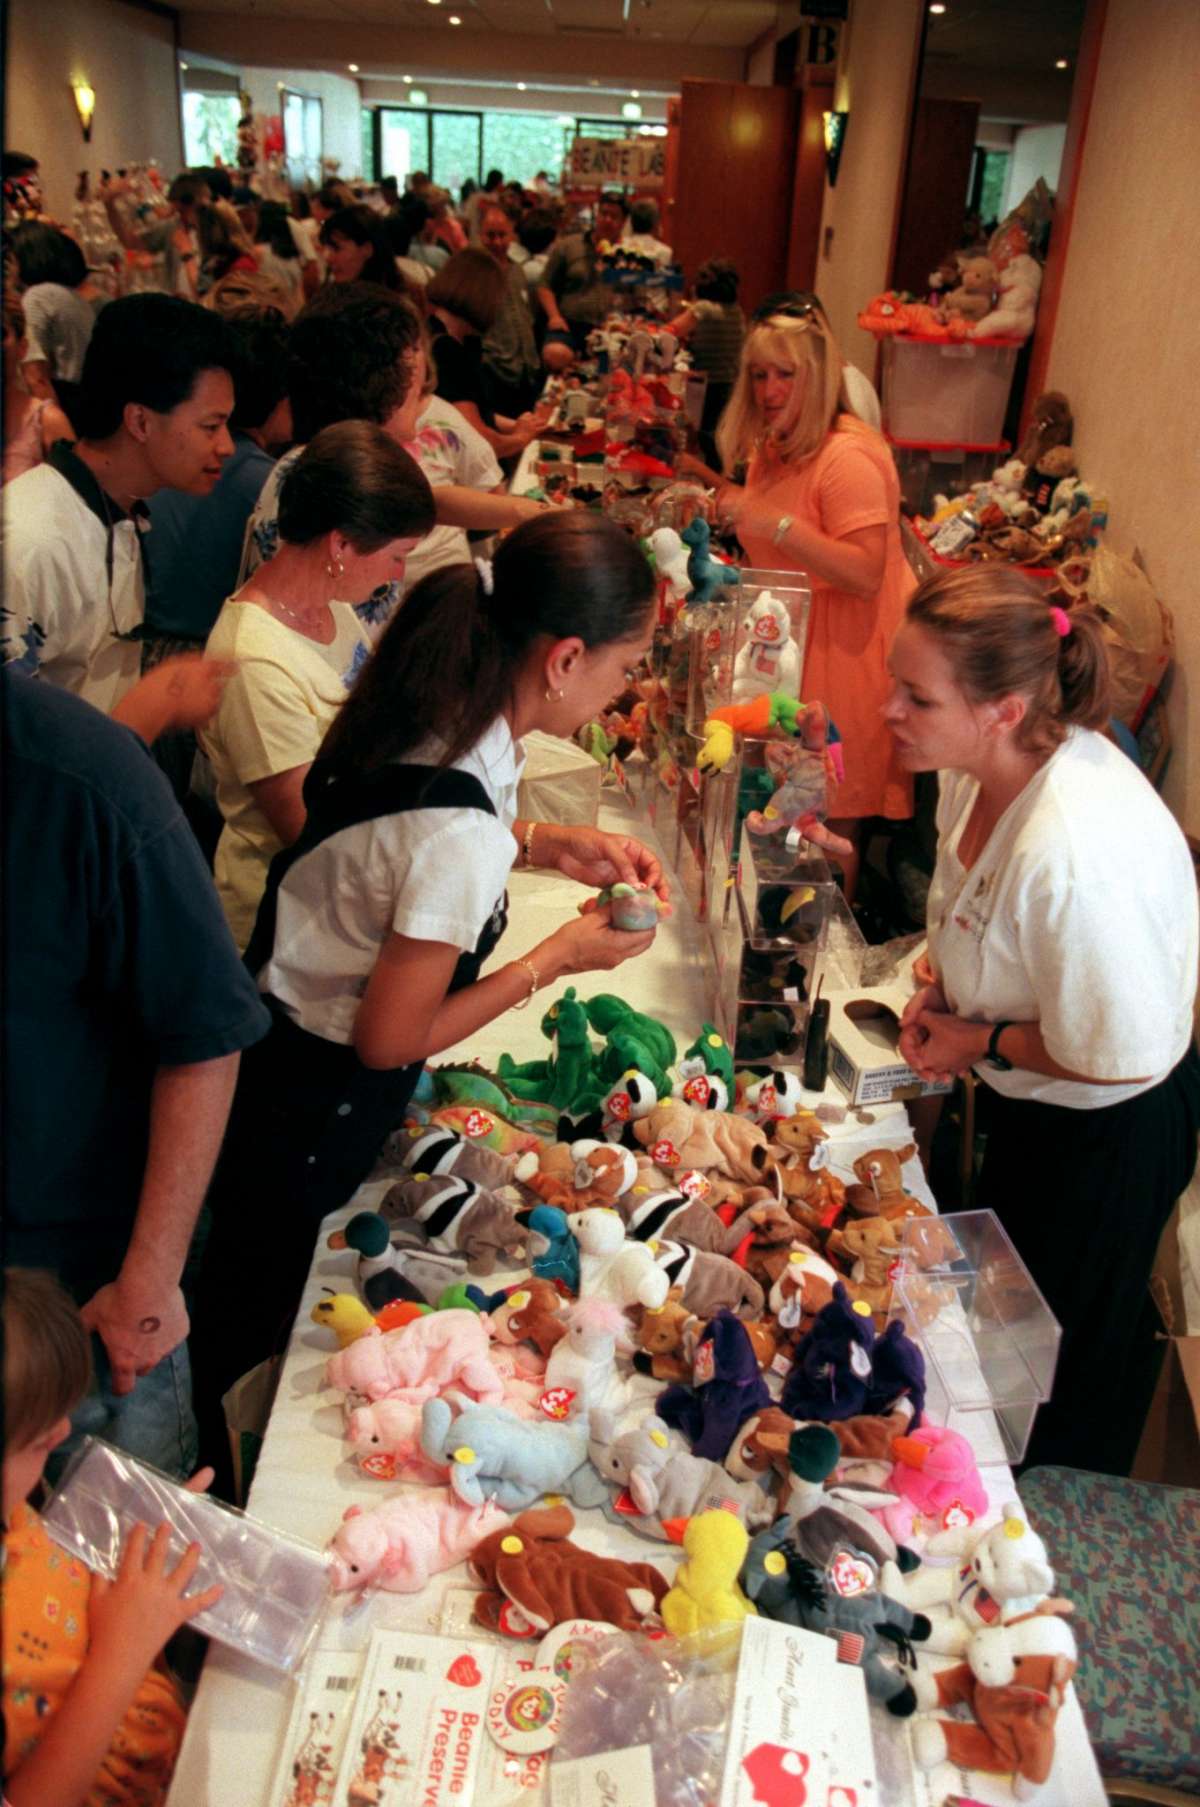 Los coleccionistas y entusiastas acudieron al Pacific Hotel en Anaheim el 12 de julio de 1998 para comprar y vender Beanie Babies. Por lo tanto, muchas personas asistieron al evento en el que los bomberos tuvieron que cerrar temporalmente las puertas.